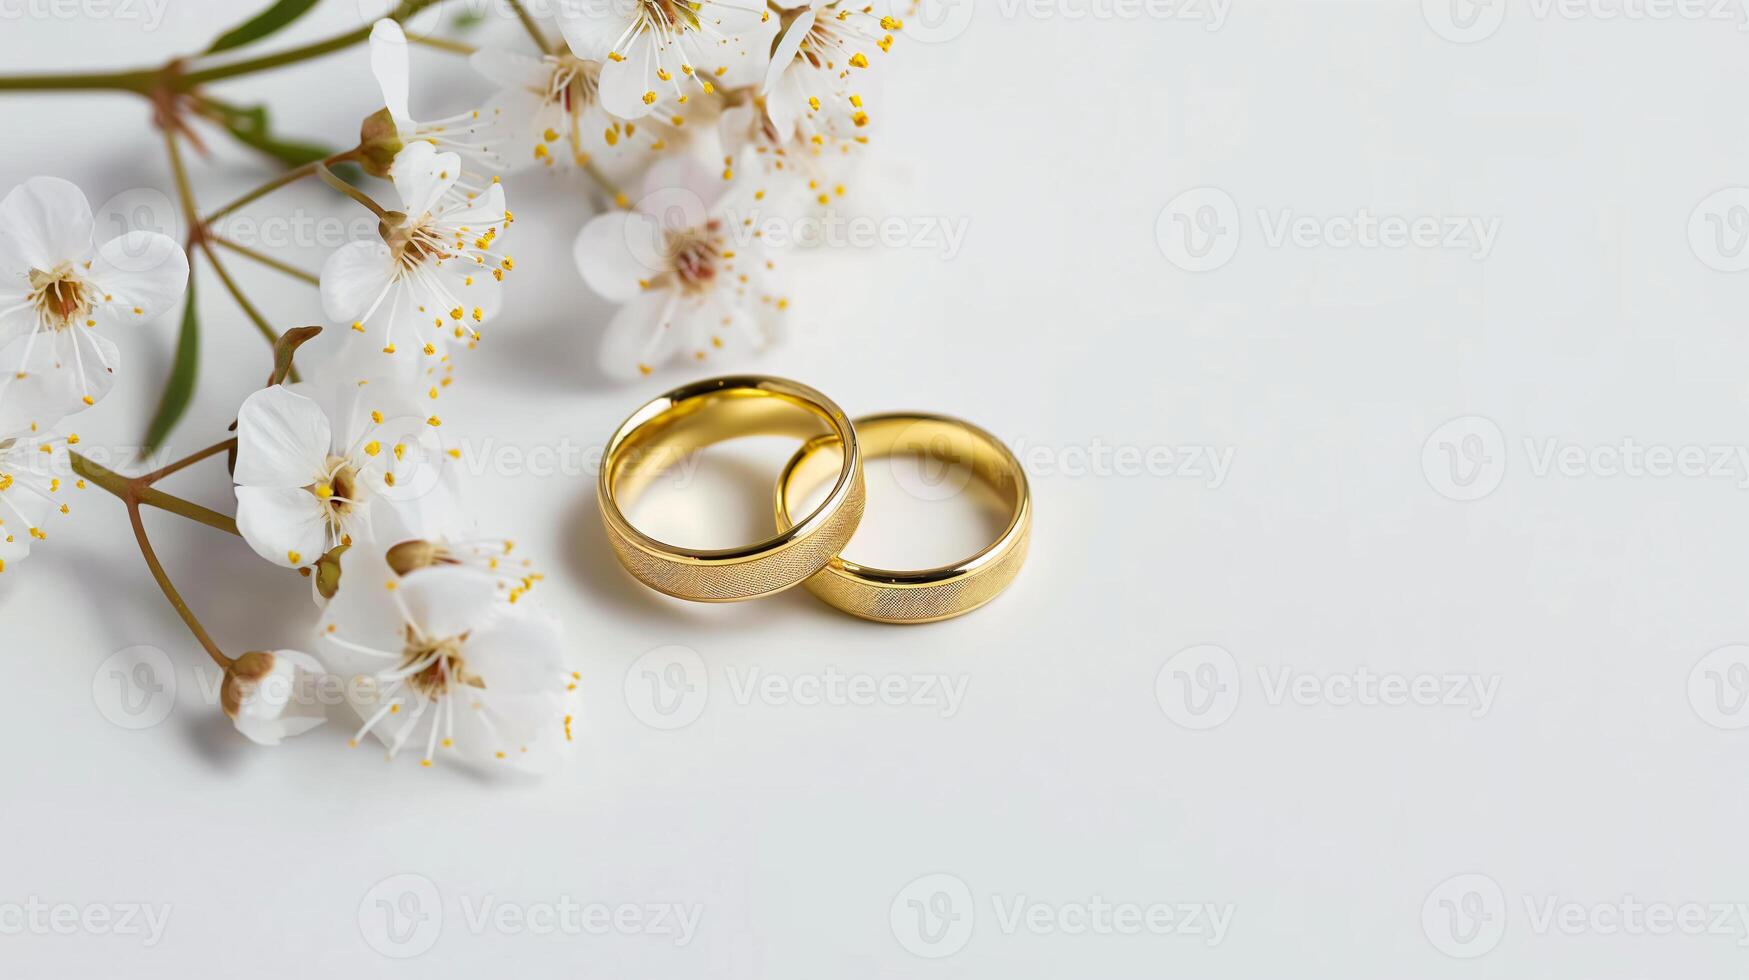 elegant guld bröllop ringar mitt i körsbär blommar på en vit bakgrund foto